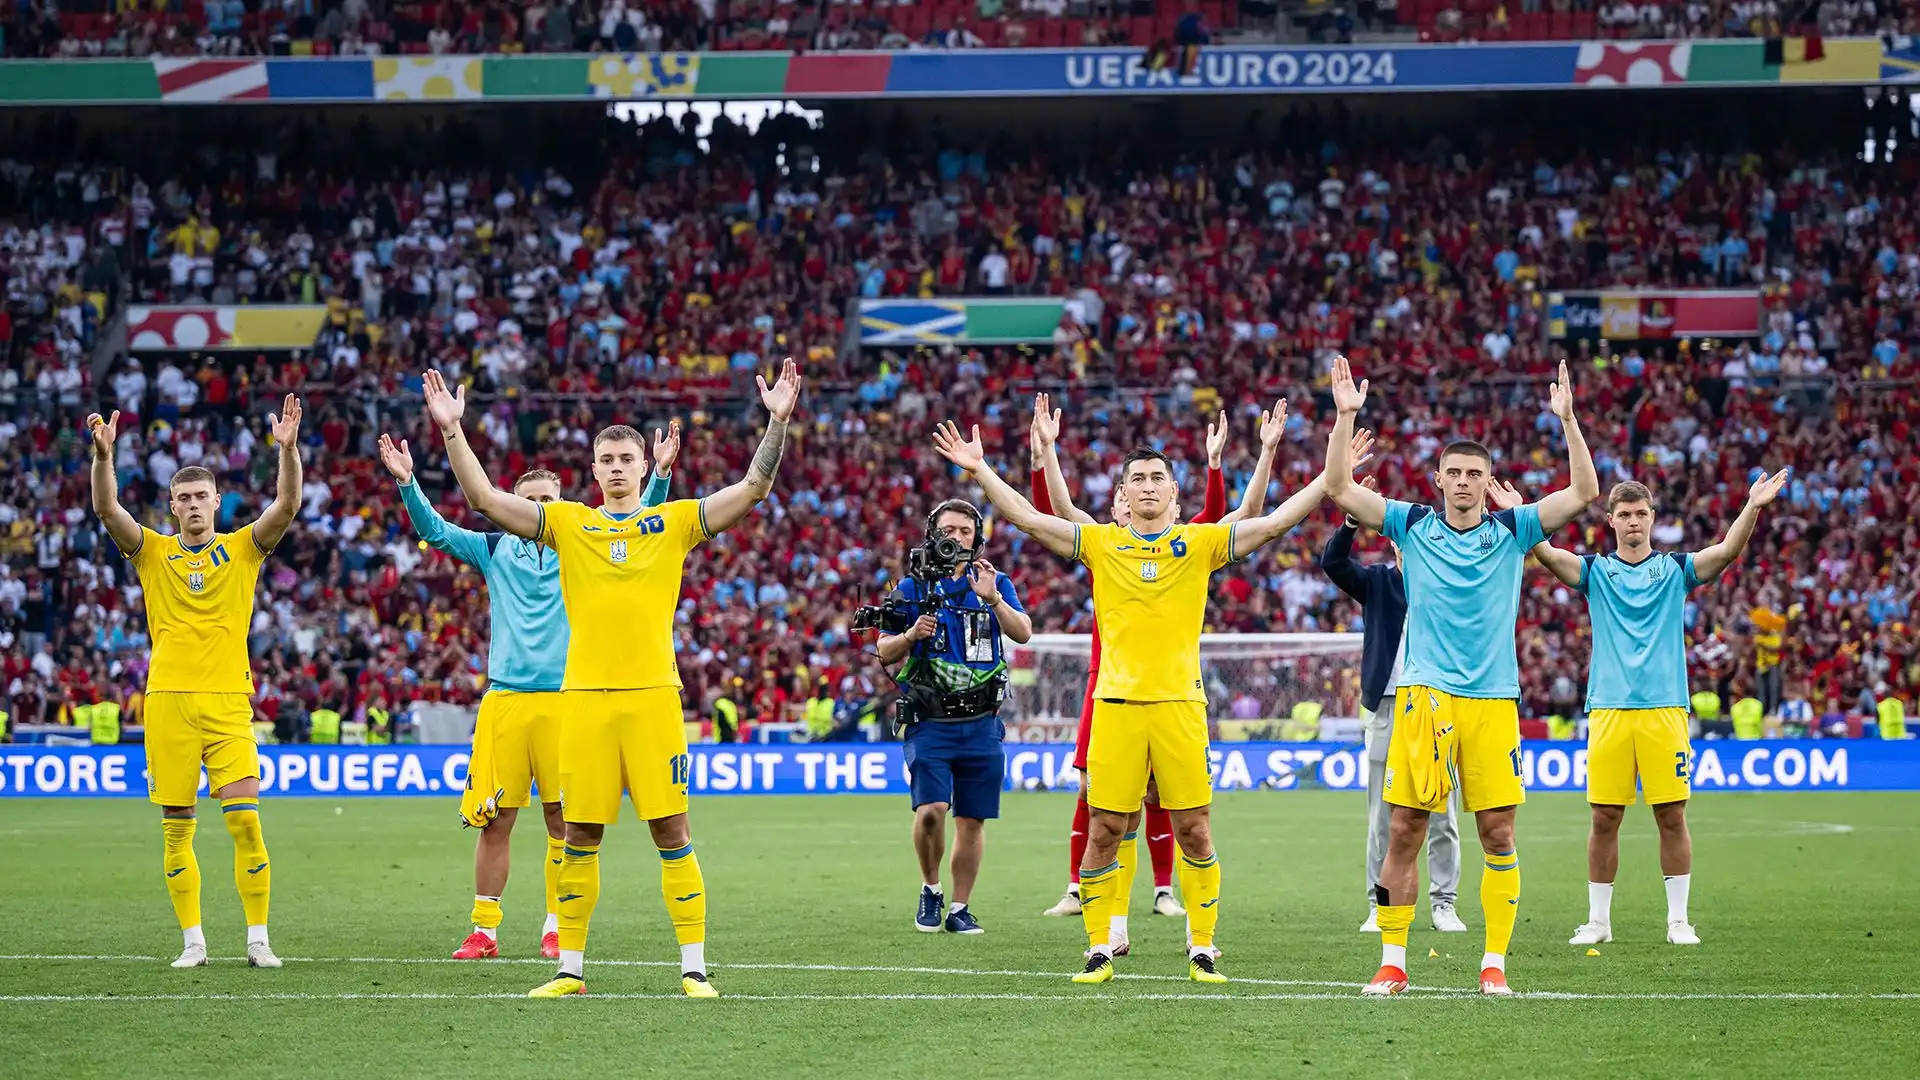 L'Ucraina ha ringraziato i suoi tifosi dopo l'eliminazione